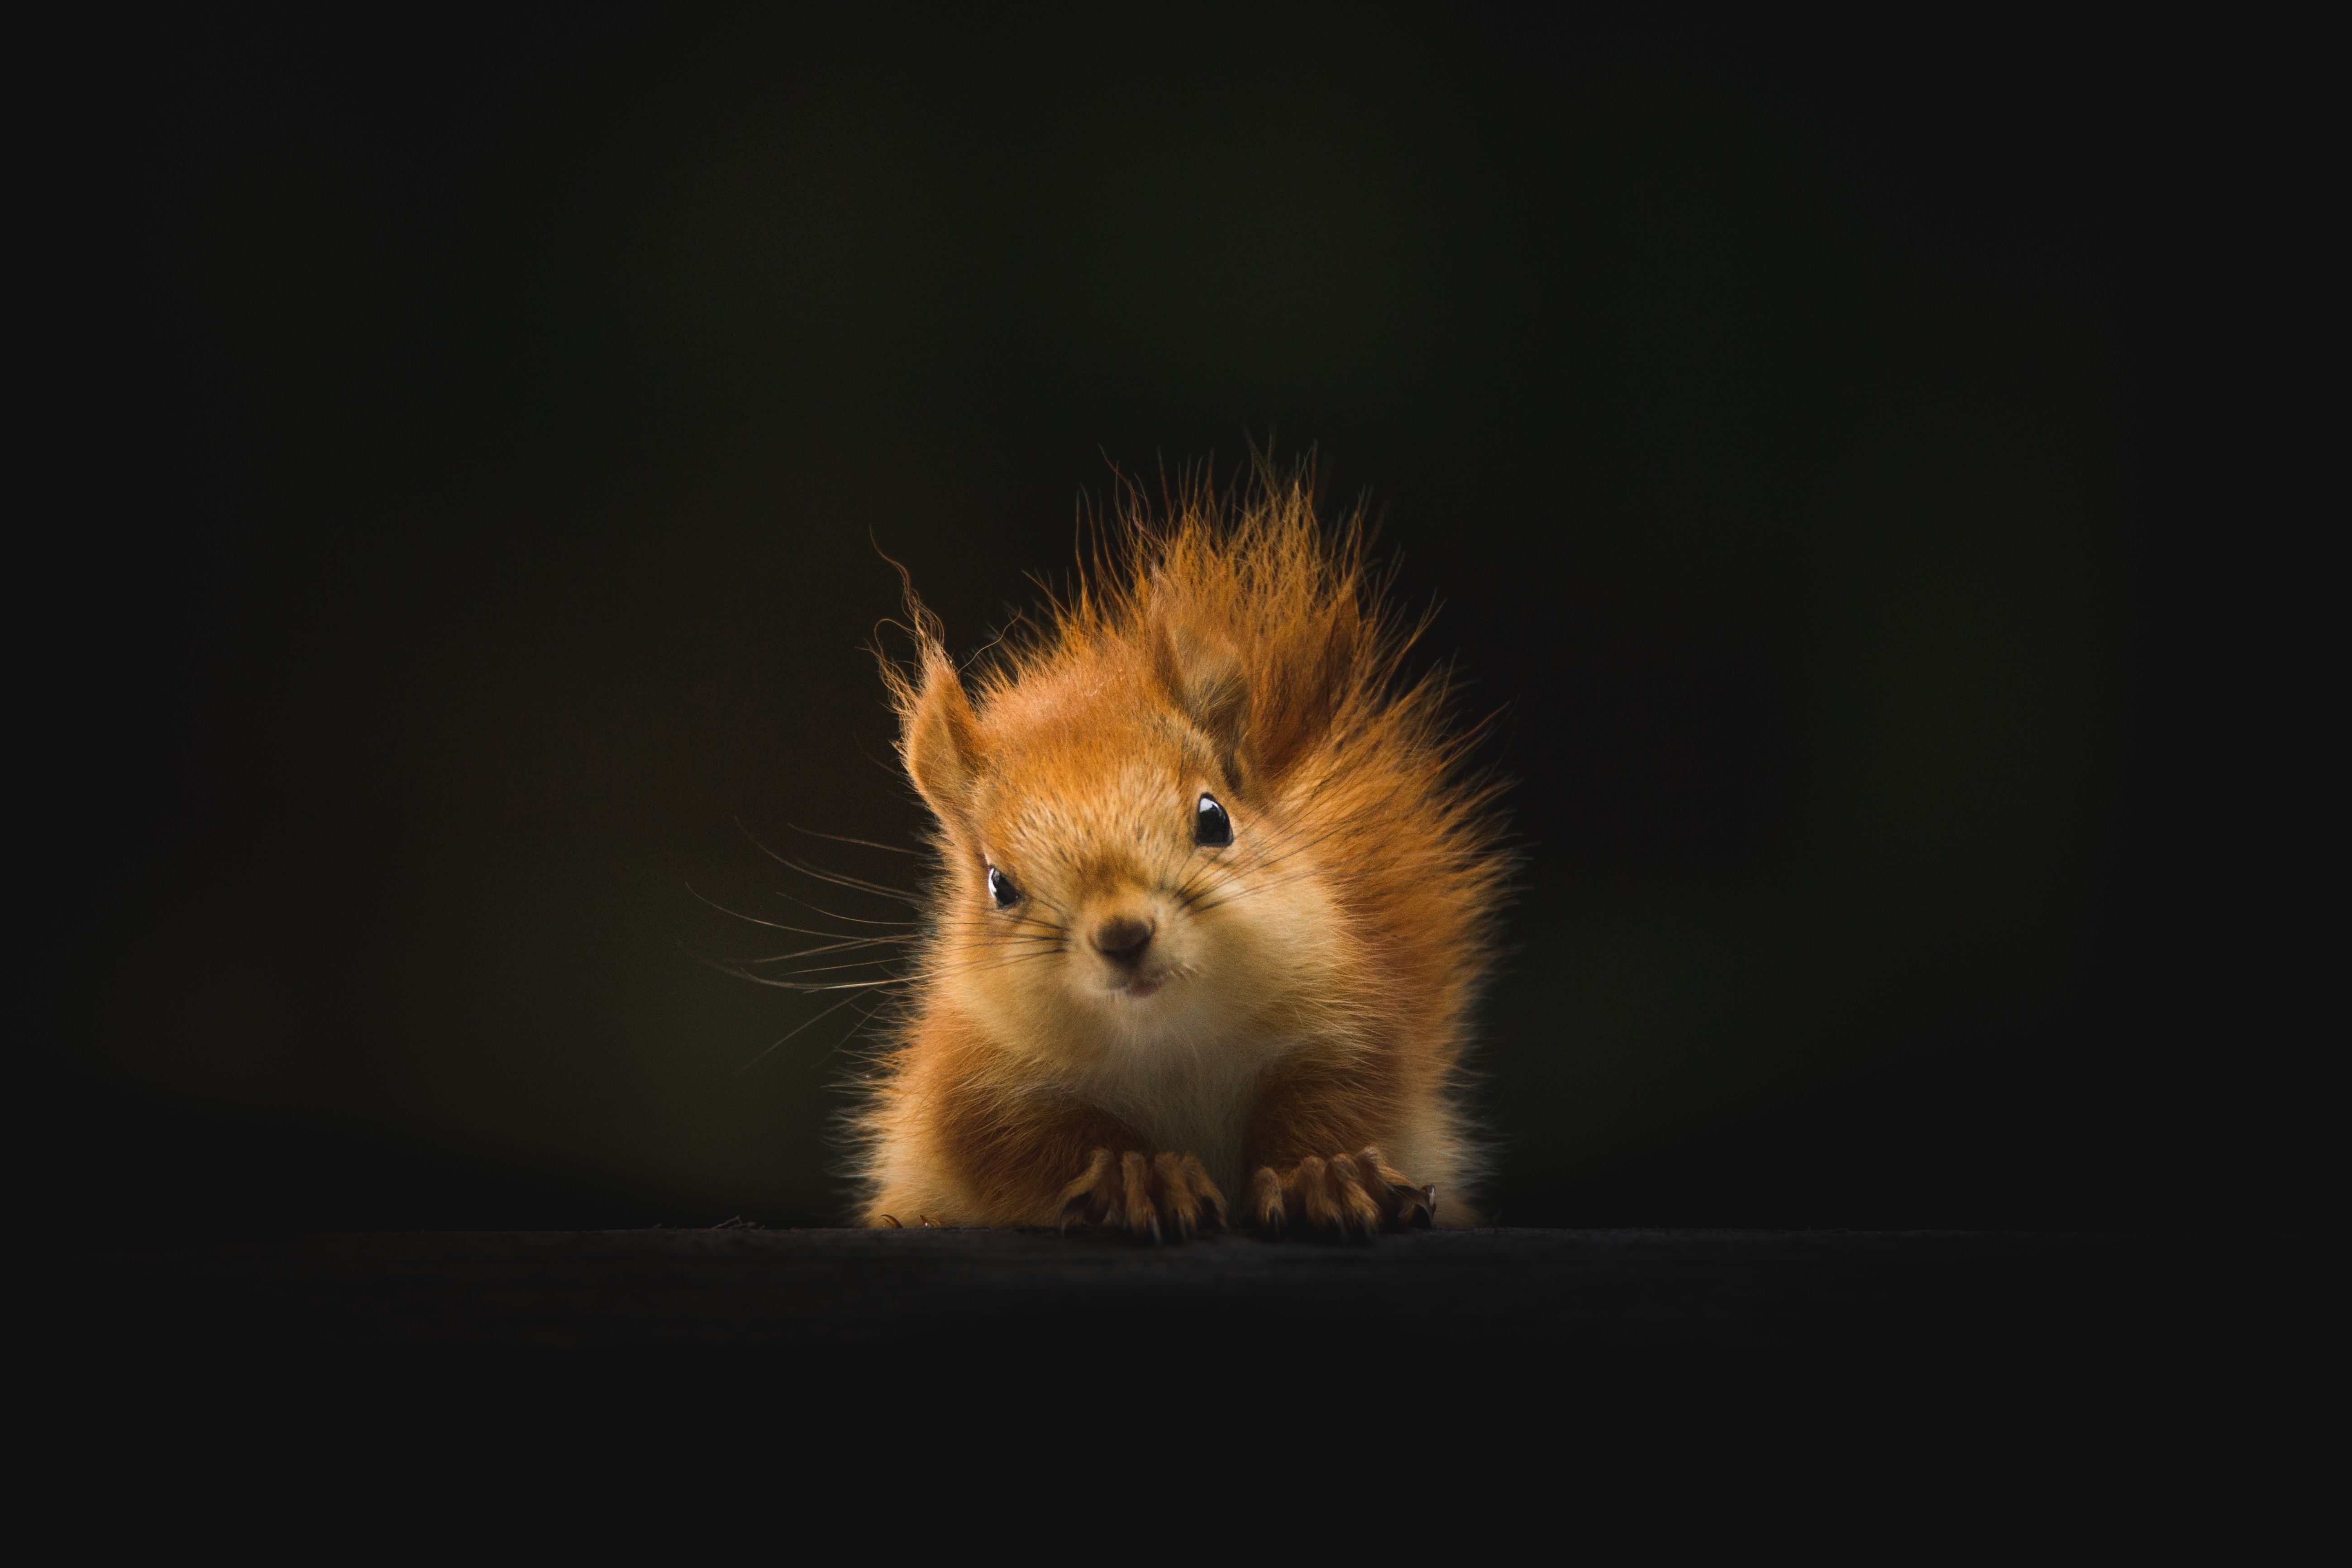 1080p Squirrel Hd Images